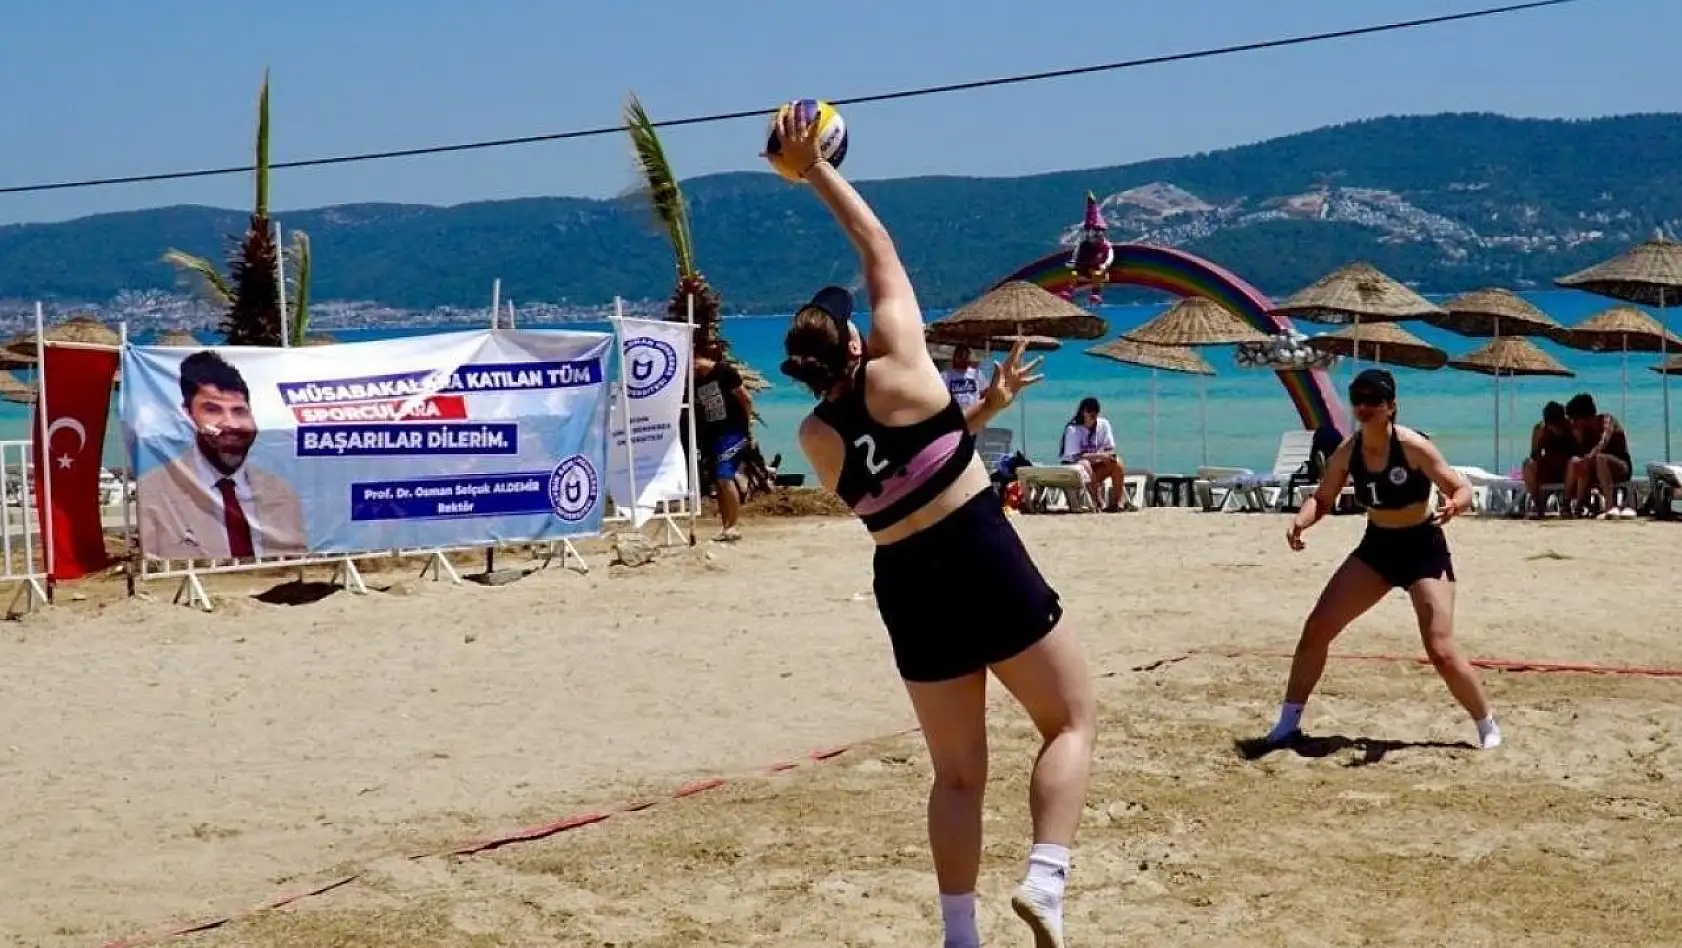 Plaj Voleybolu Türkiye Şampiyonası, Didim'de başladı